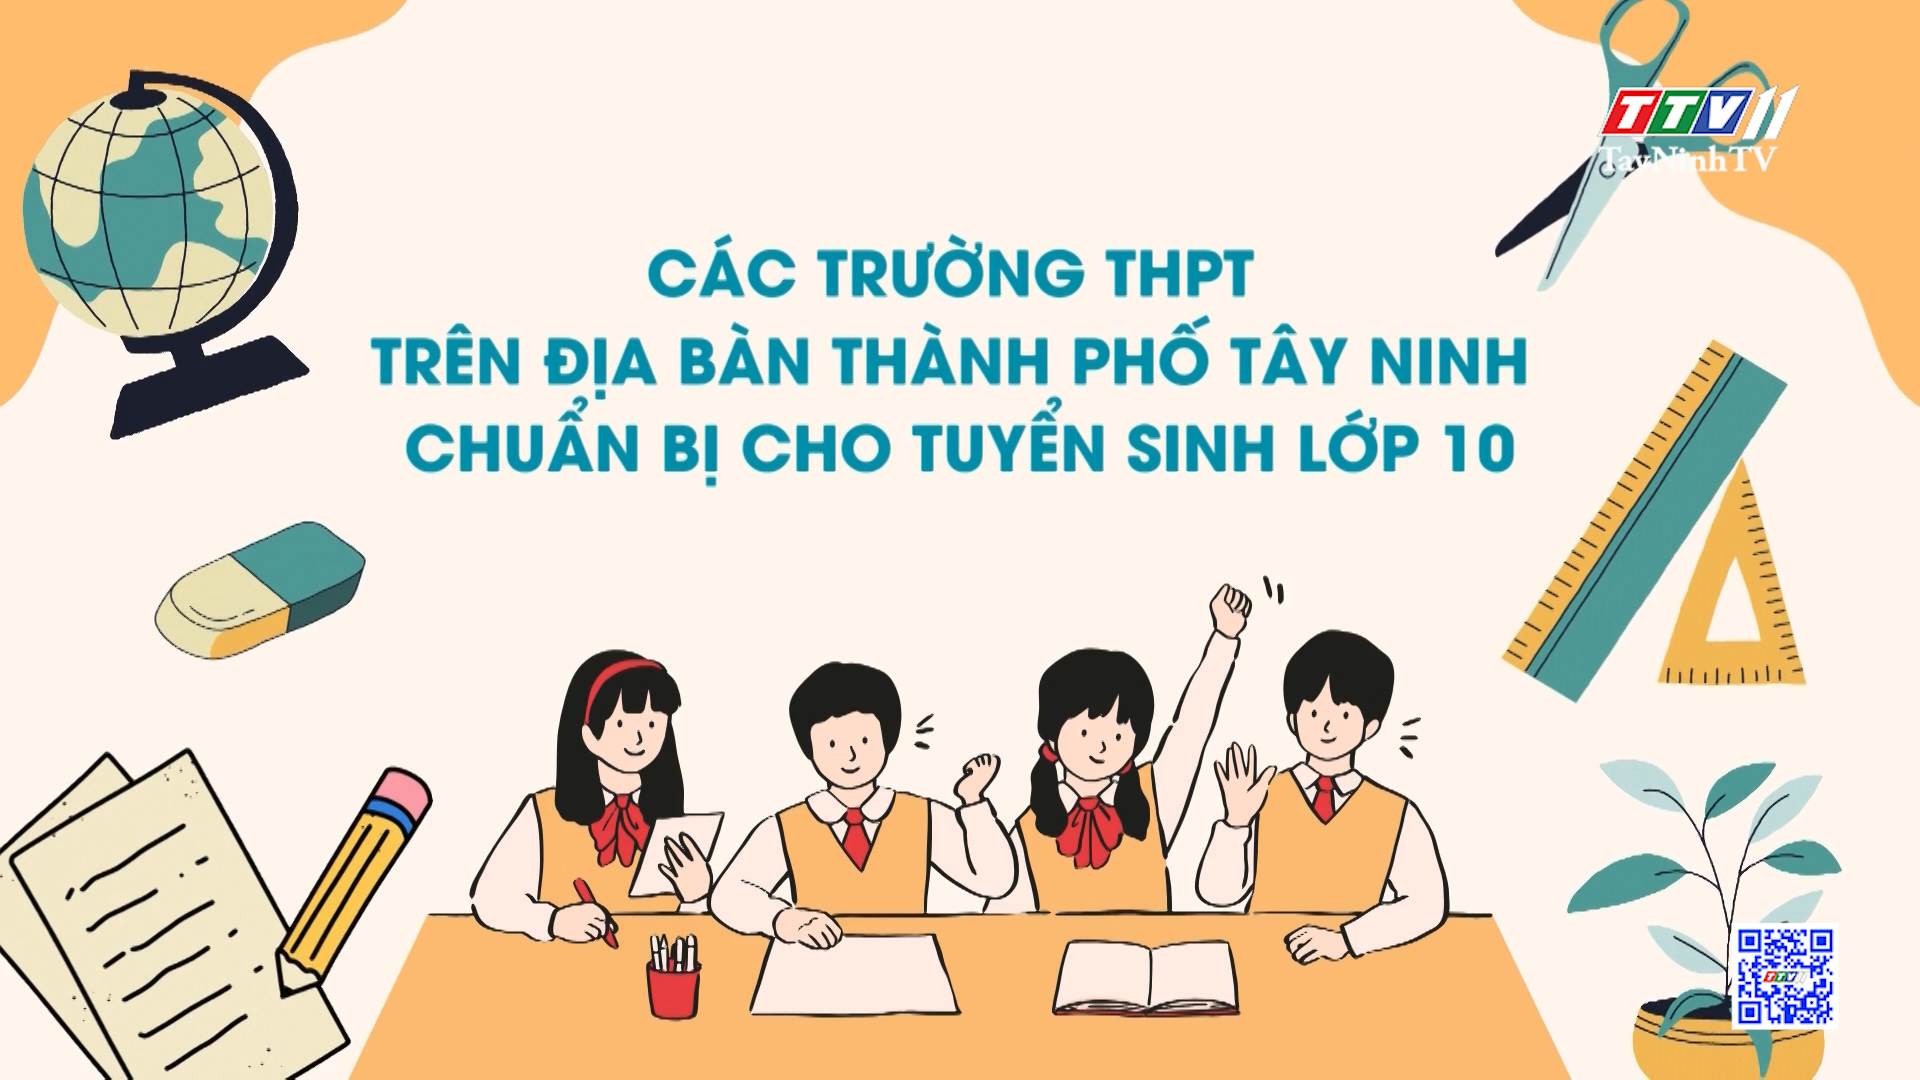 Các trường THPT trên địa bàn thành phố Tây Ninh chuẩn bị cho tuyển sinh lớp 10 | GIÁO DỤC ĐÀO TẠO | TayNinhTV